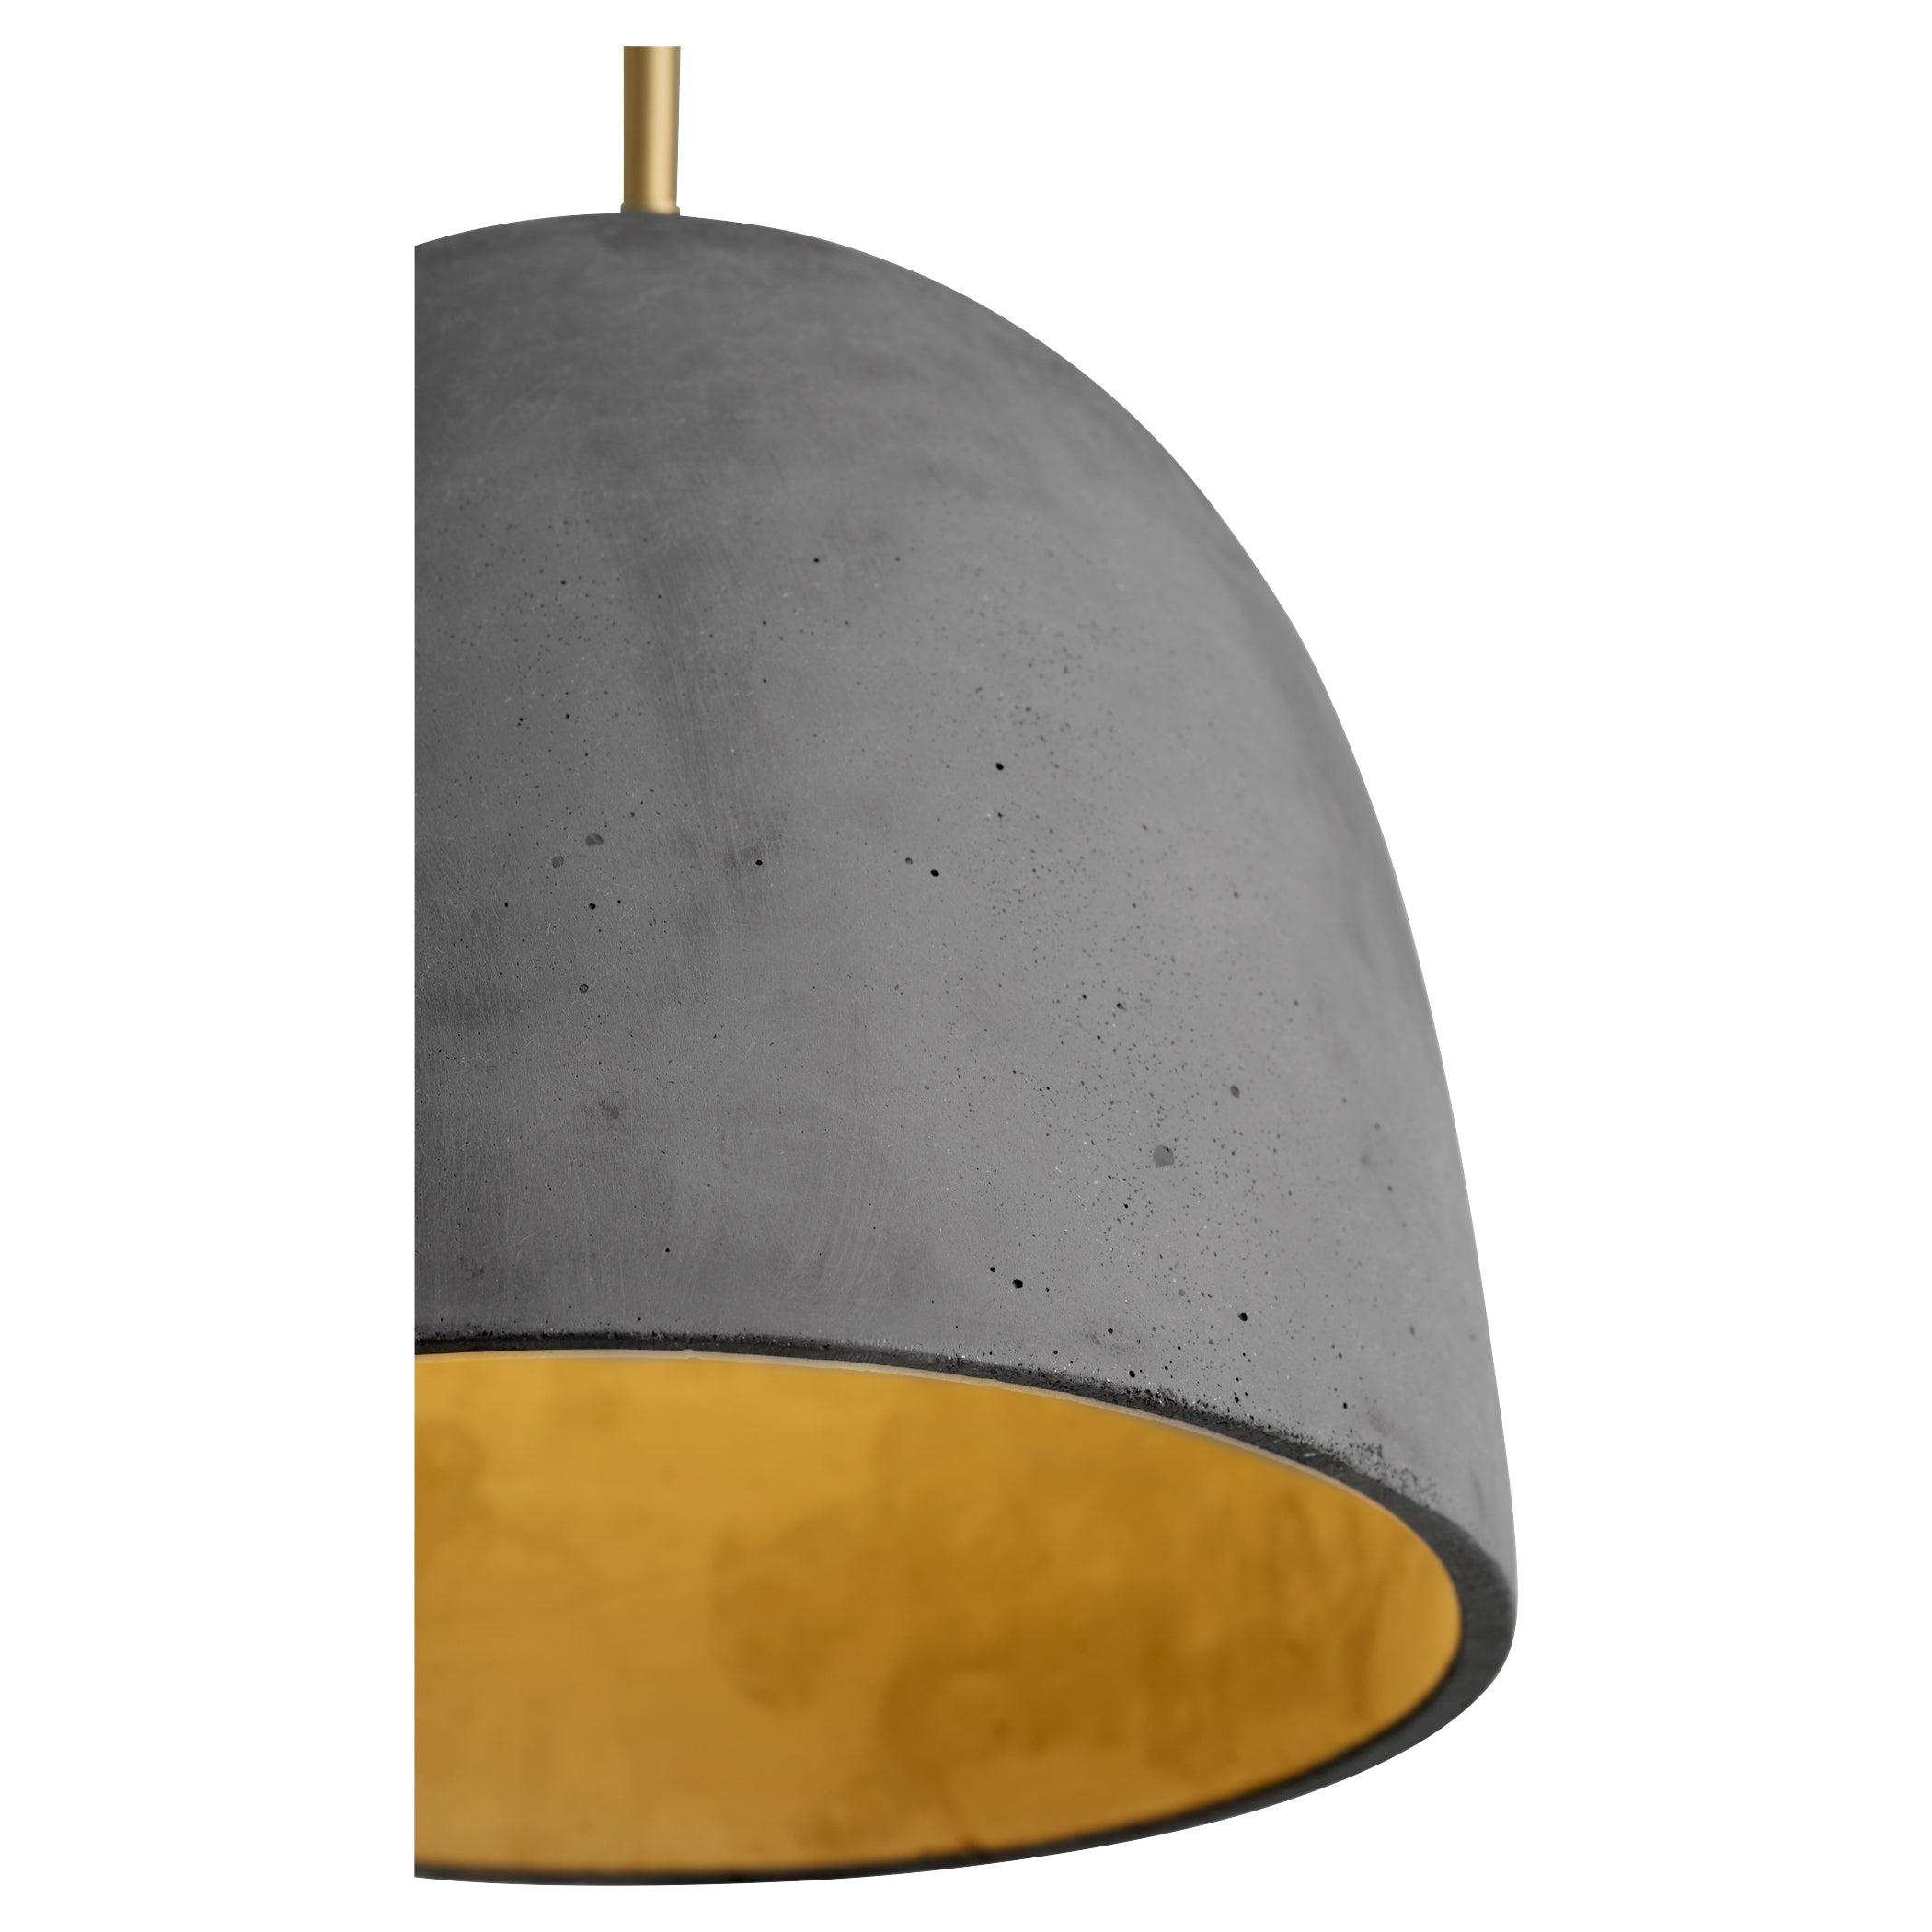 Oxygen Dune 3-641-1540 Modern Concrete Pendant Light Fixture - Dark Gray, Aged Brass